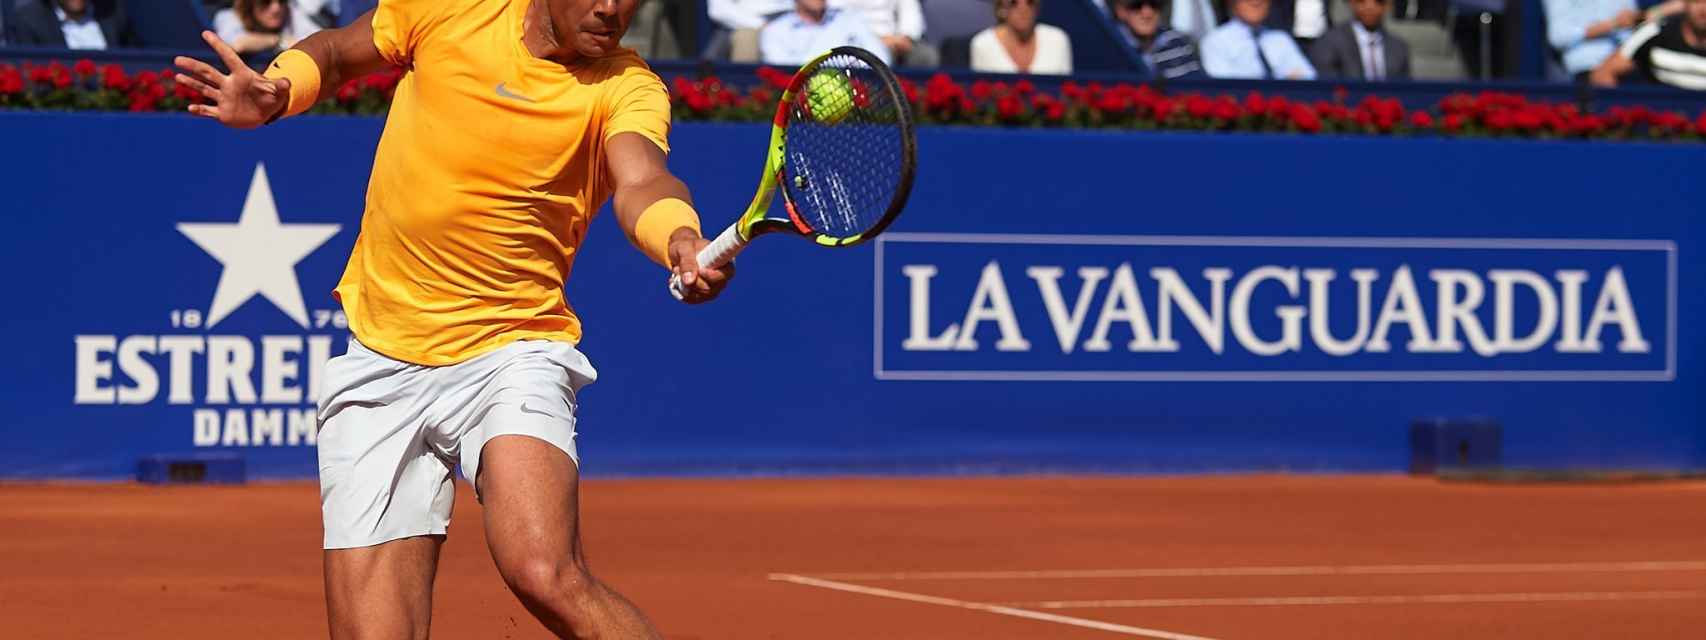 Nadal puede ganar su undécimo título en Barcelona.